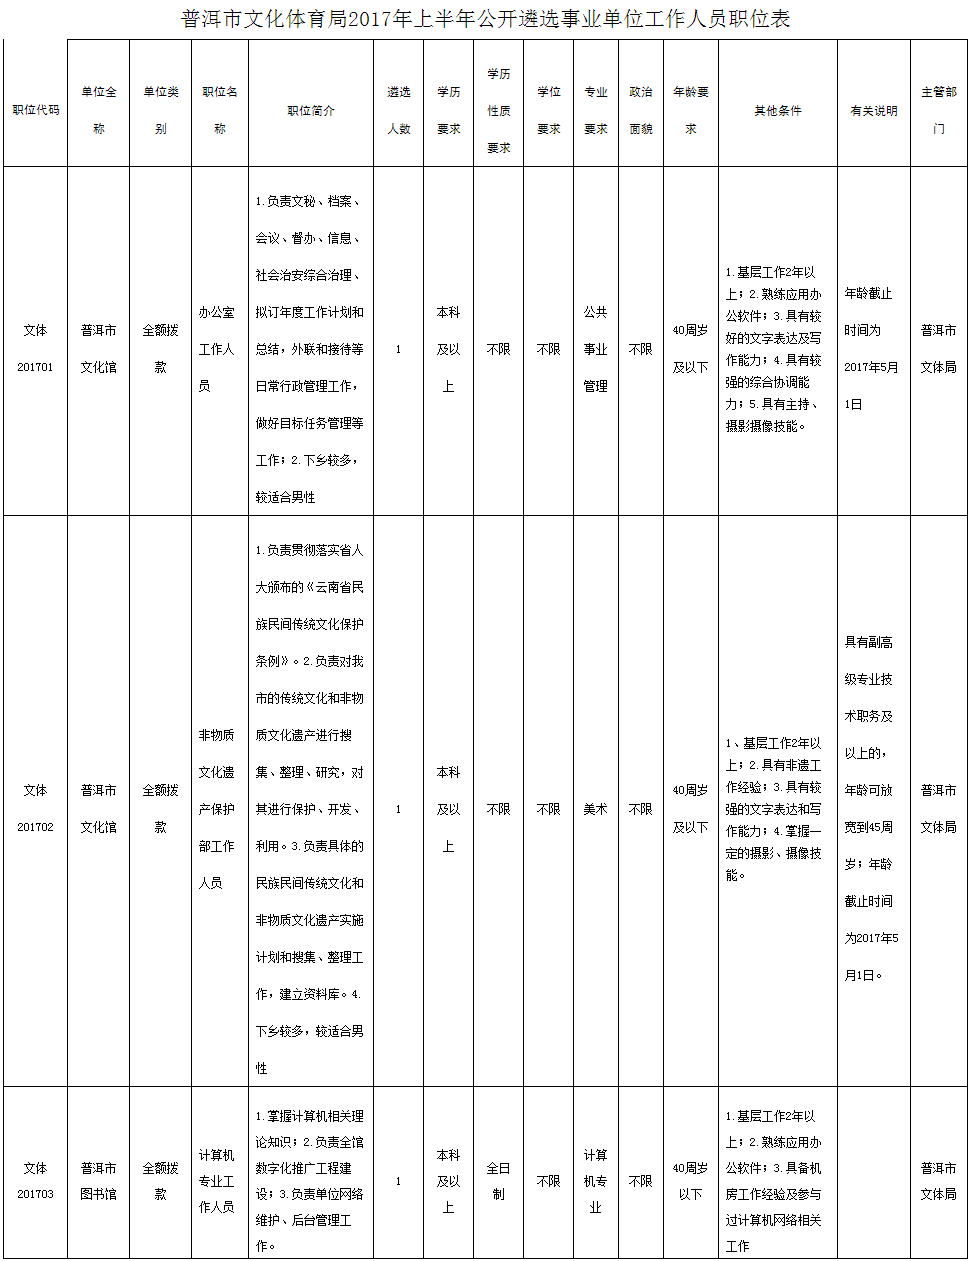 普洱市文化体育局2017年上半年公开遴选事业单位工作人员职位表.png